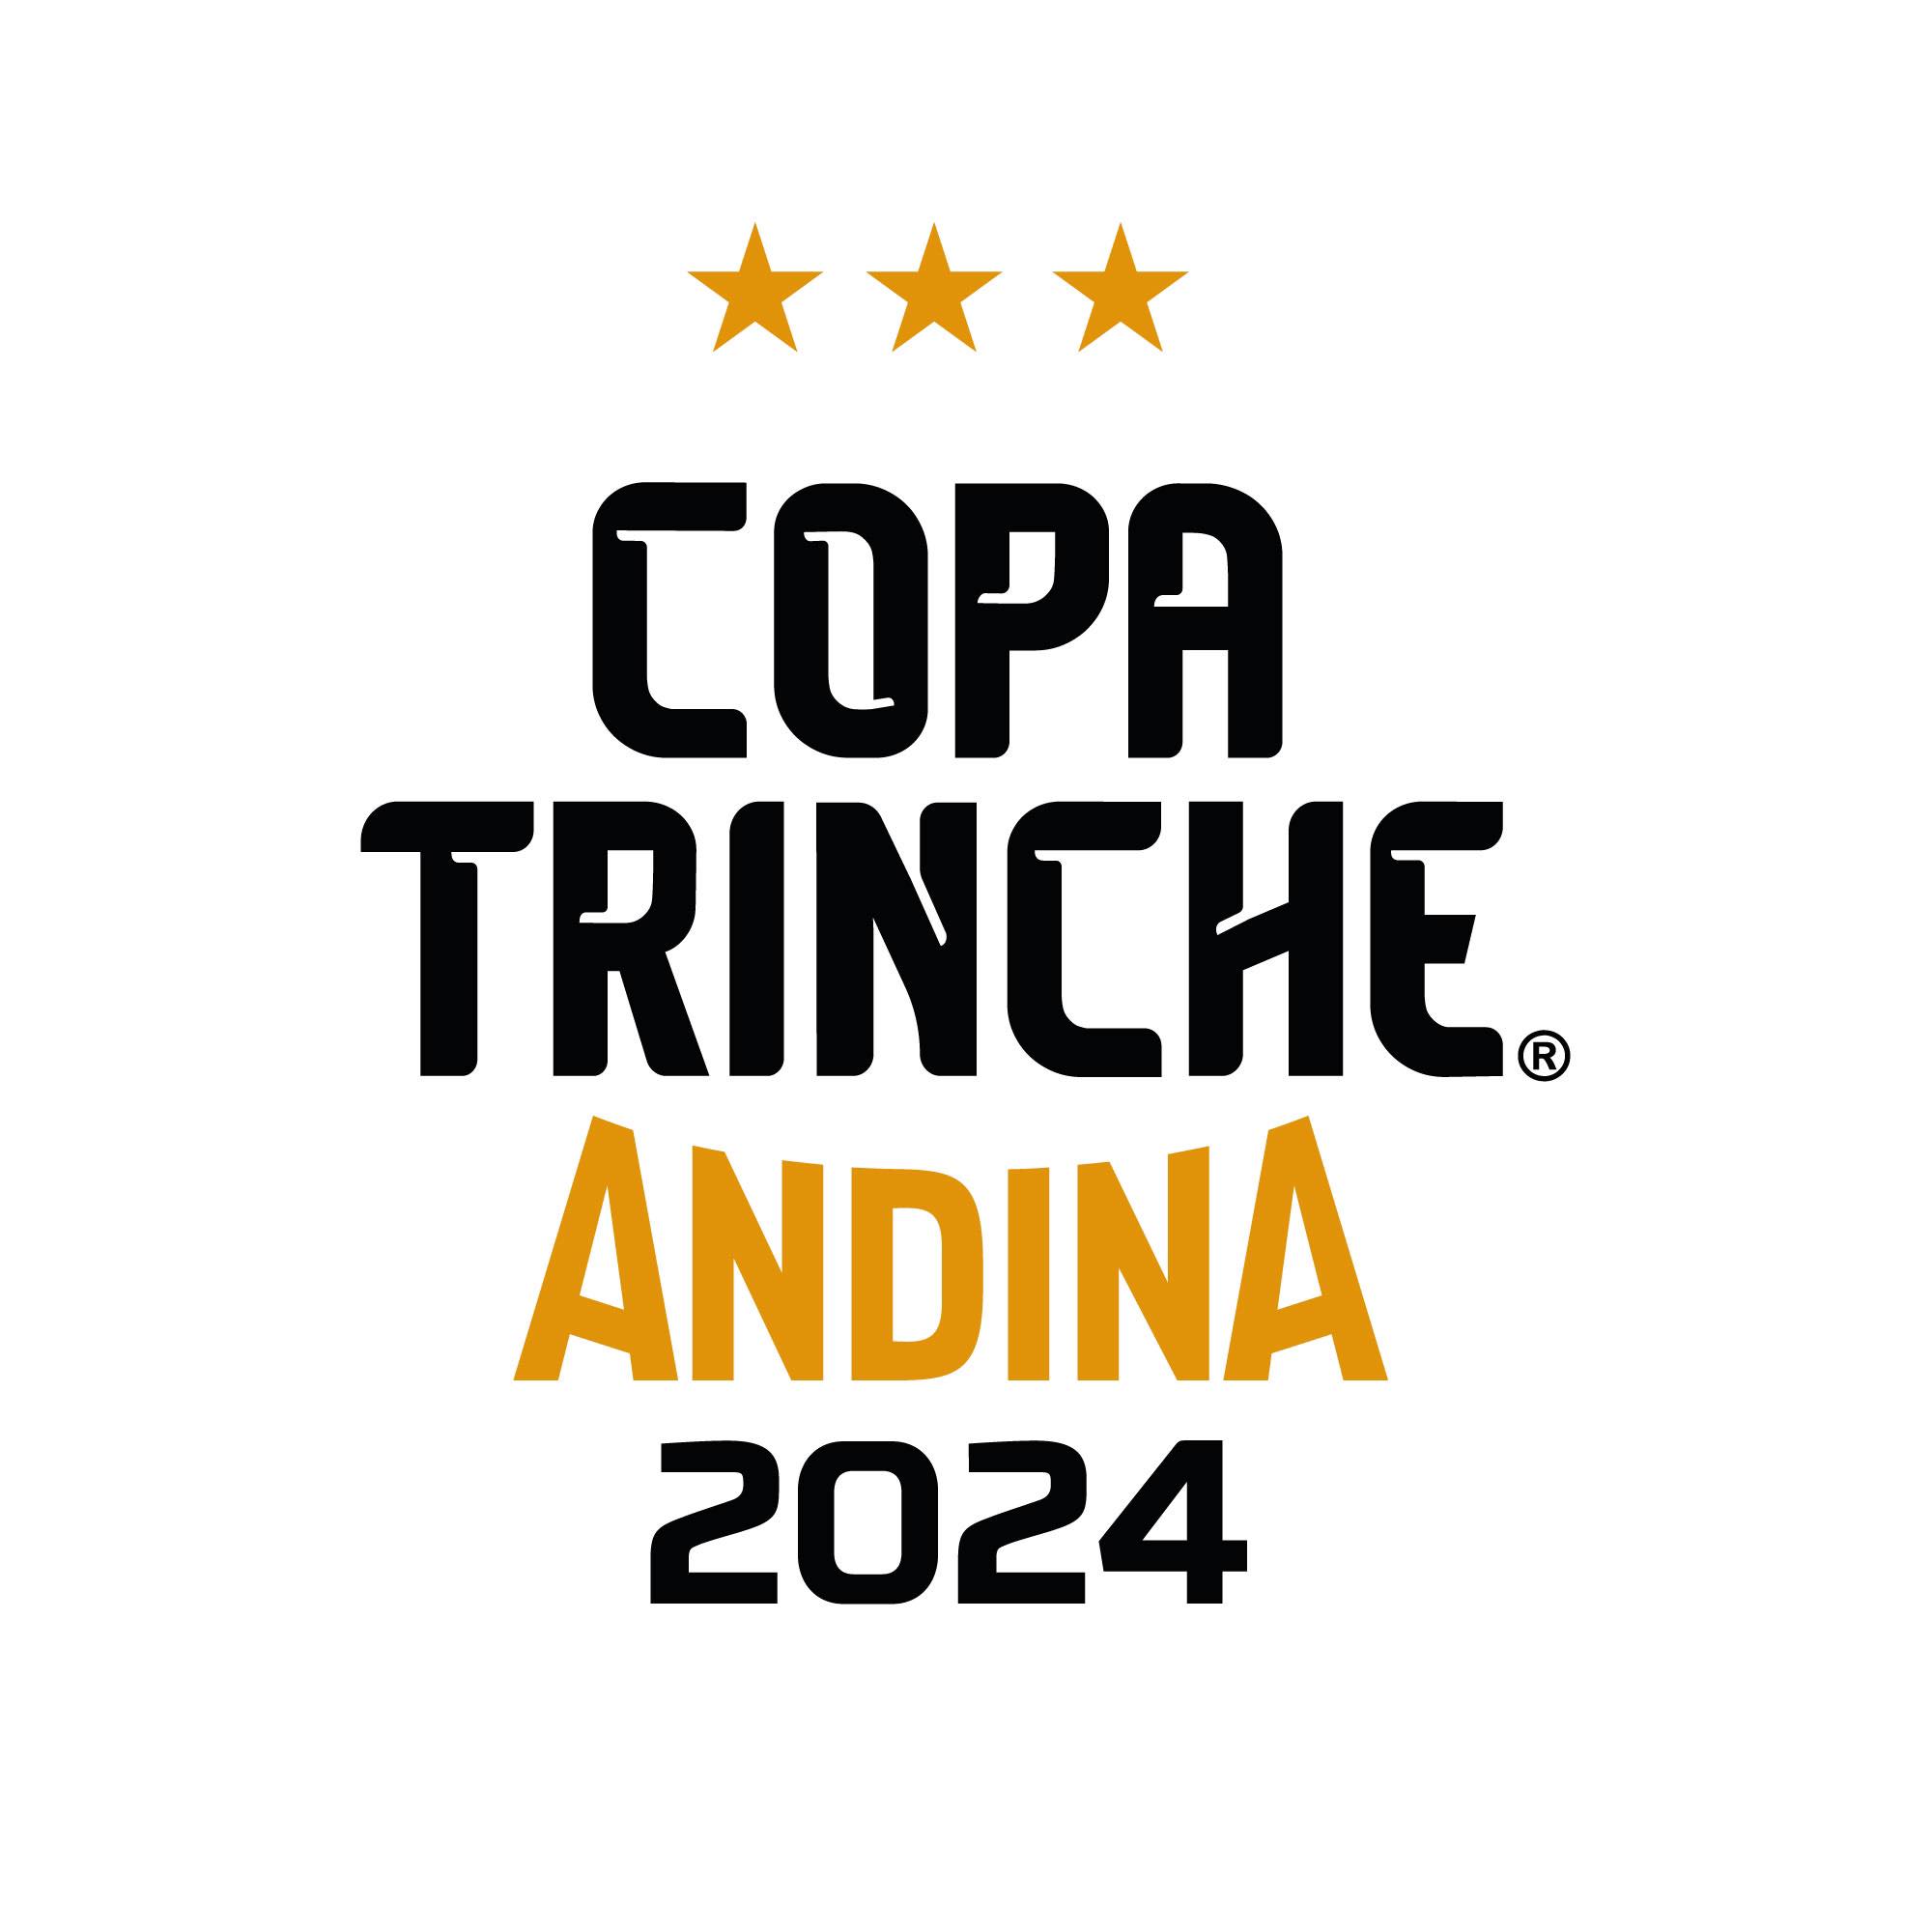 Copa Trinche Andina 2024